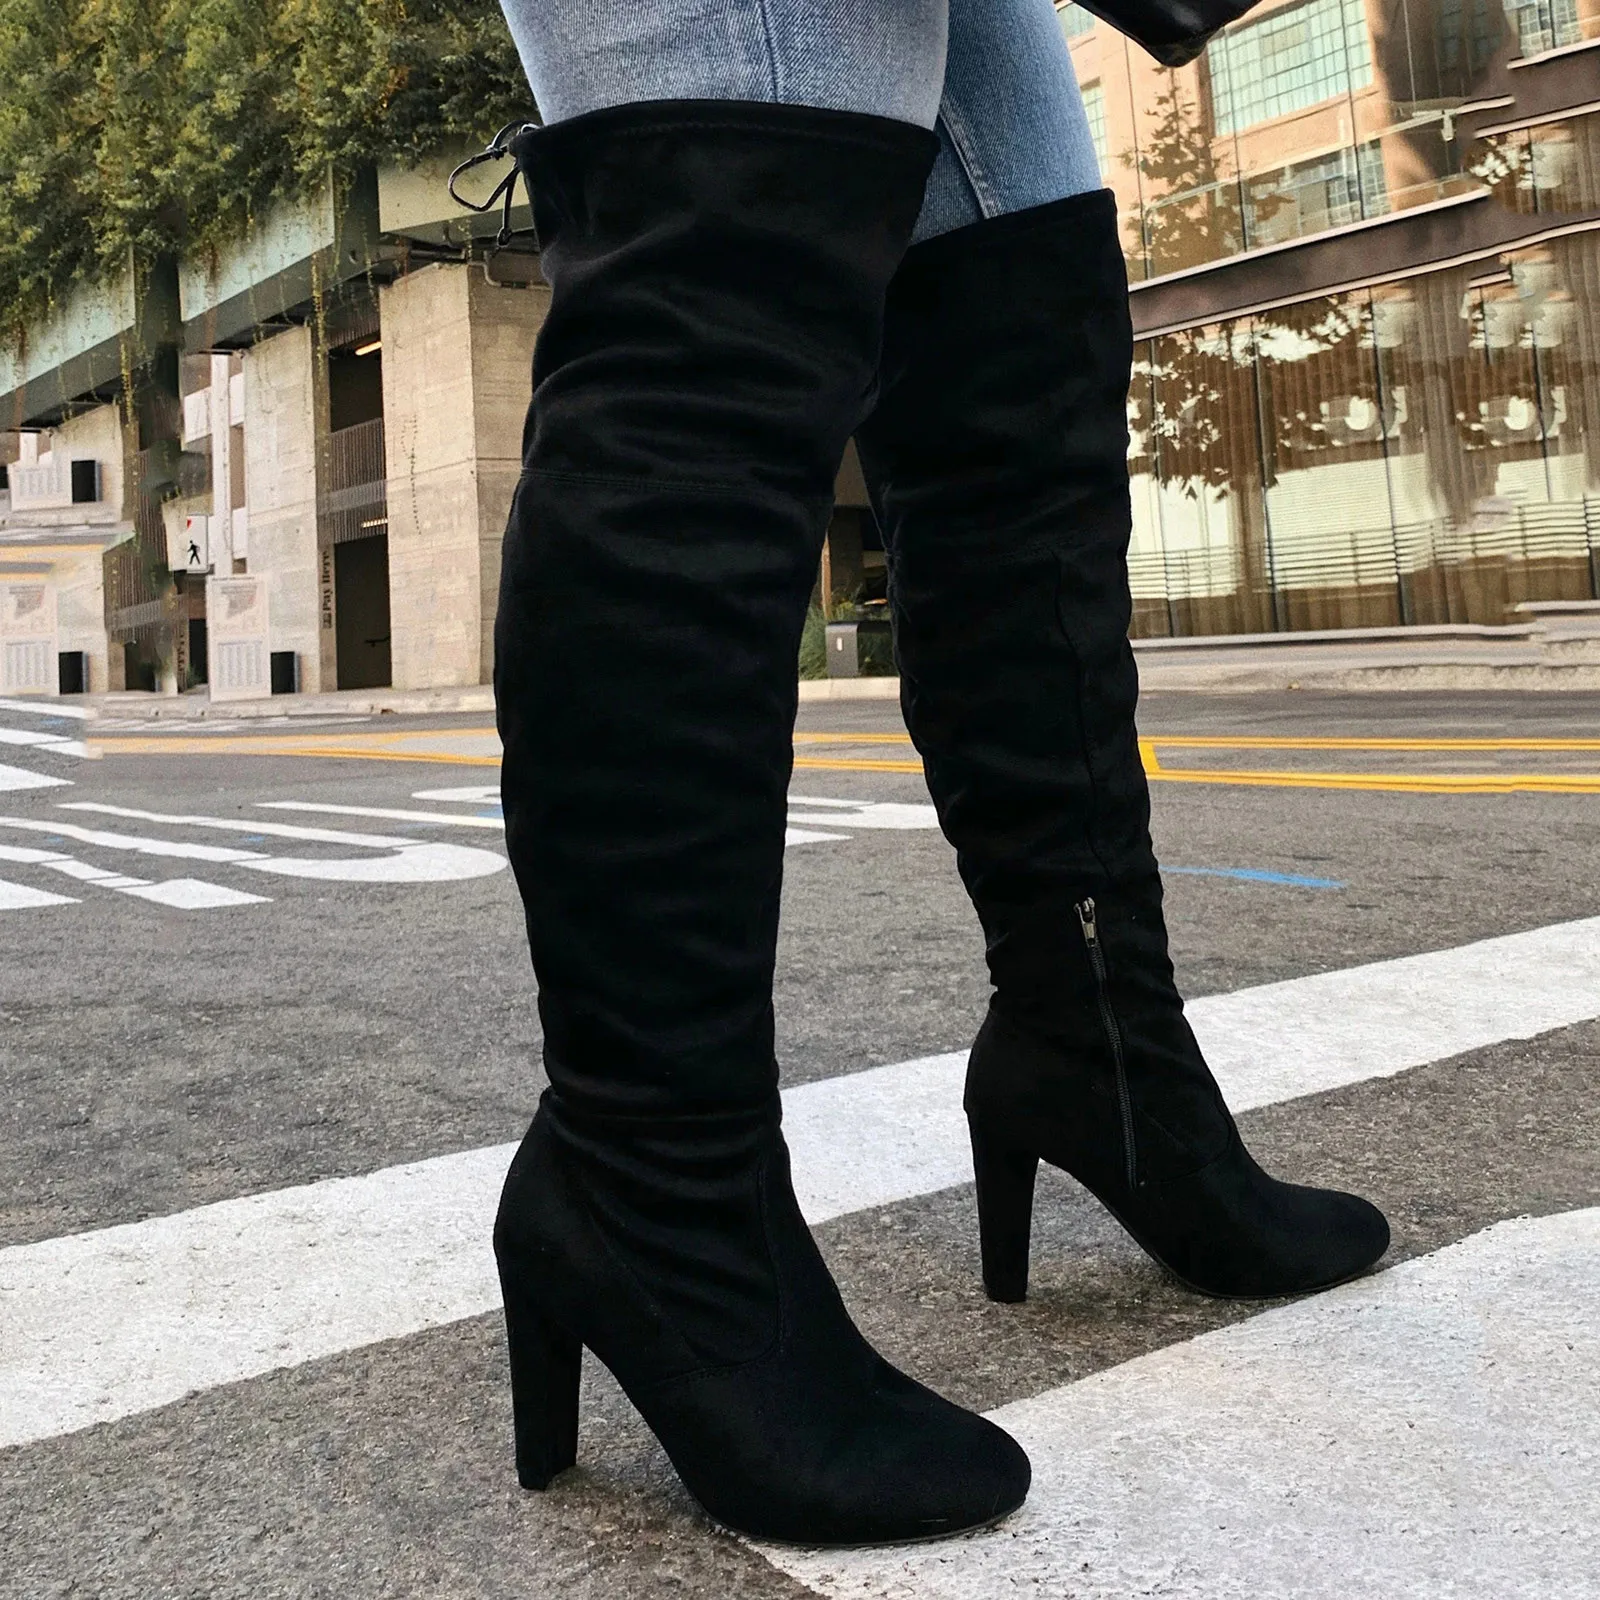 Botas de tacón cuadrado para Mujer, Botines altos hasta el muslo, cómodos, de alta calidad, a la moda, color negro, #40 AliExpress Calzado